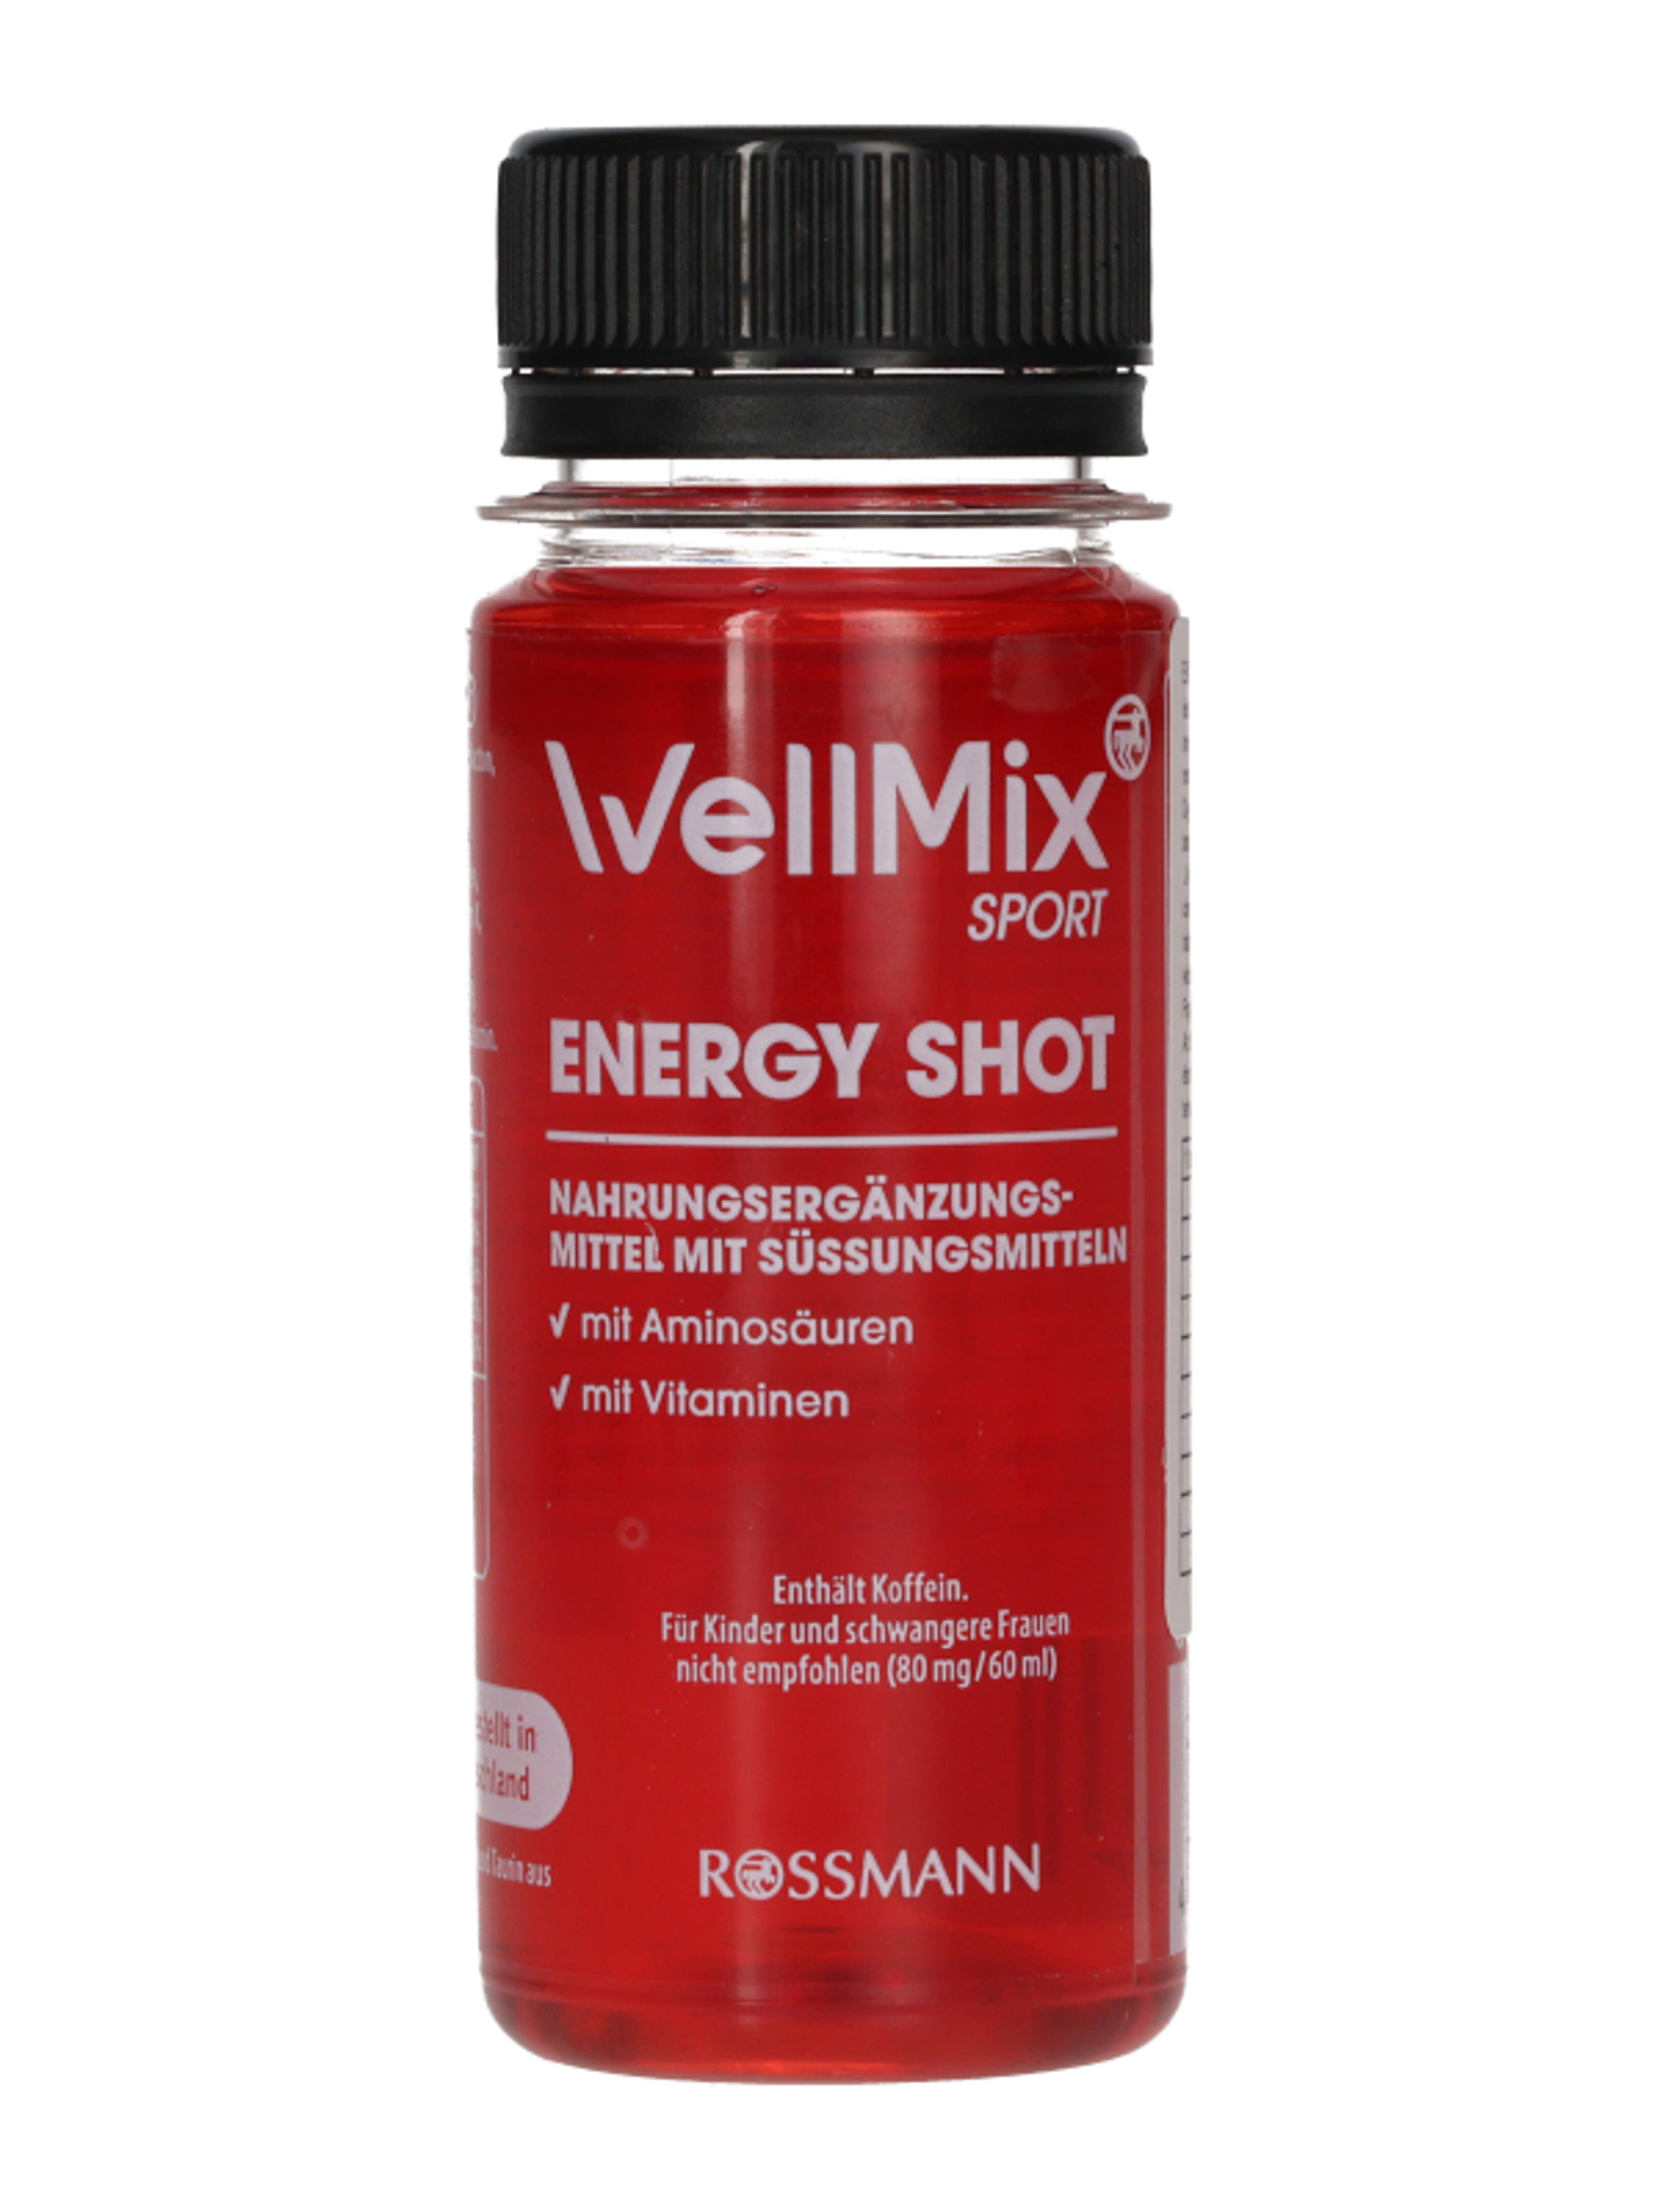 Well Mix Energy Shot - 60 ml-2